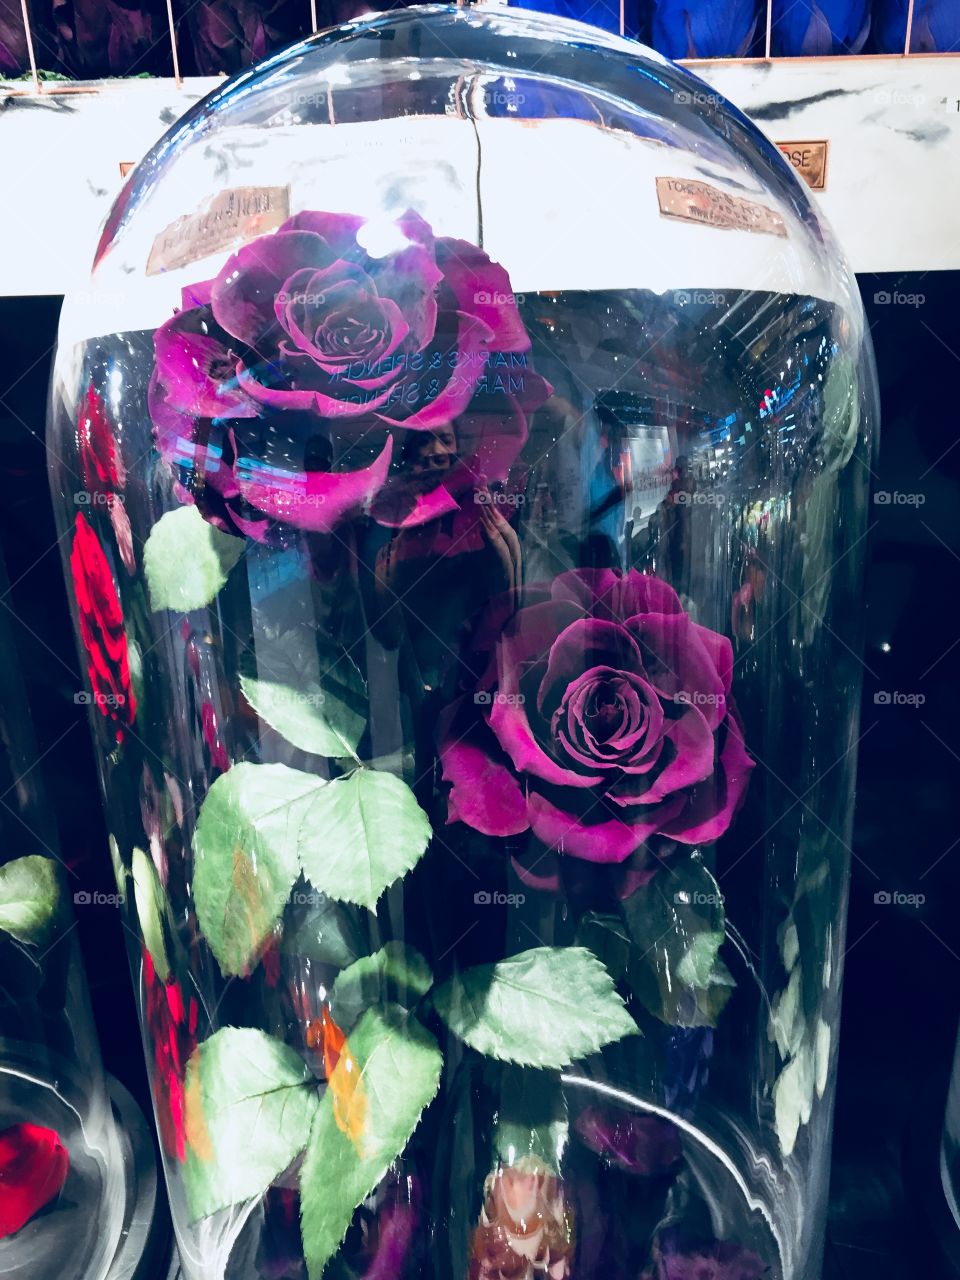 Violet roses